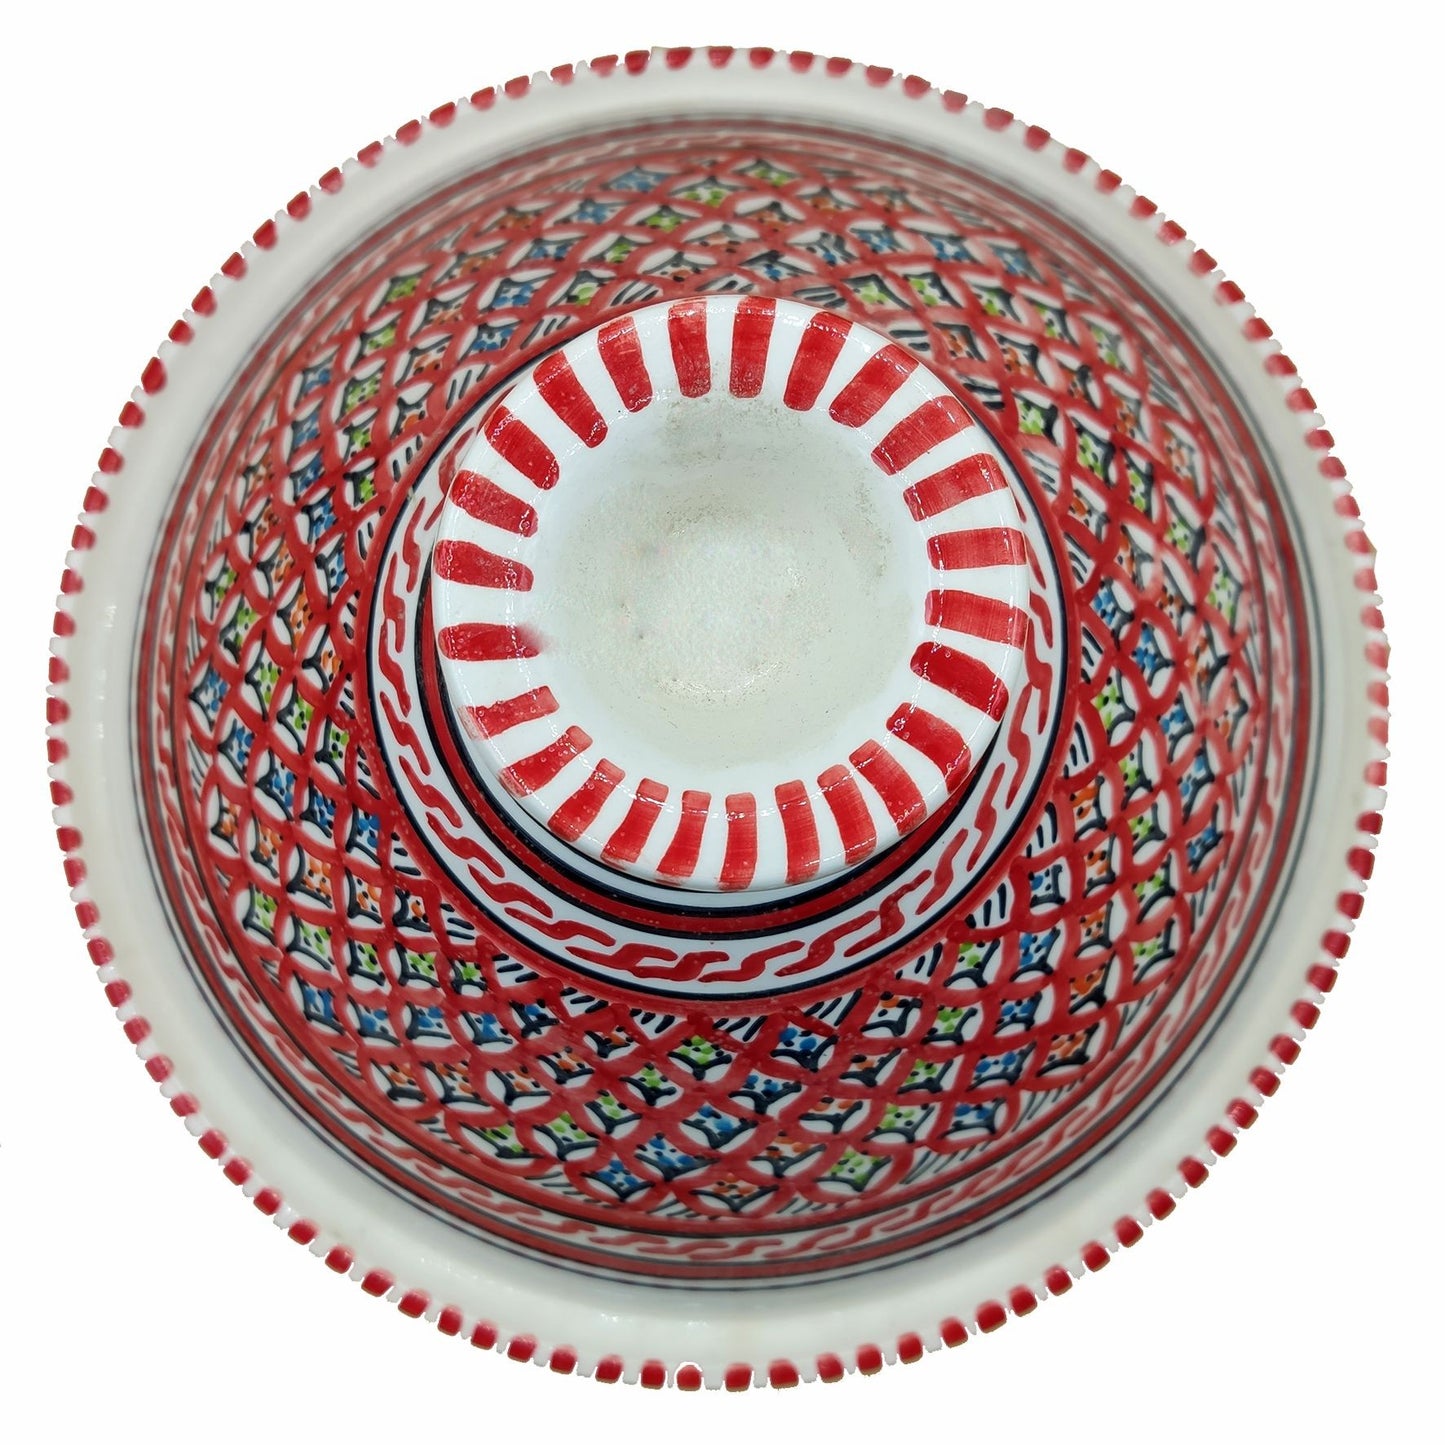 Elite Decoratieve Tajine Marokkaans Keramiek Tunesisch Etnisch Groot 0311201104